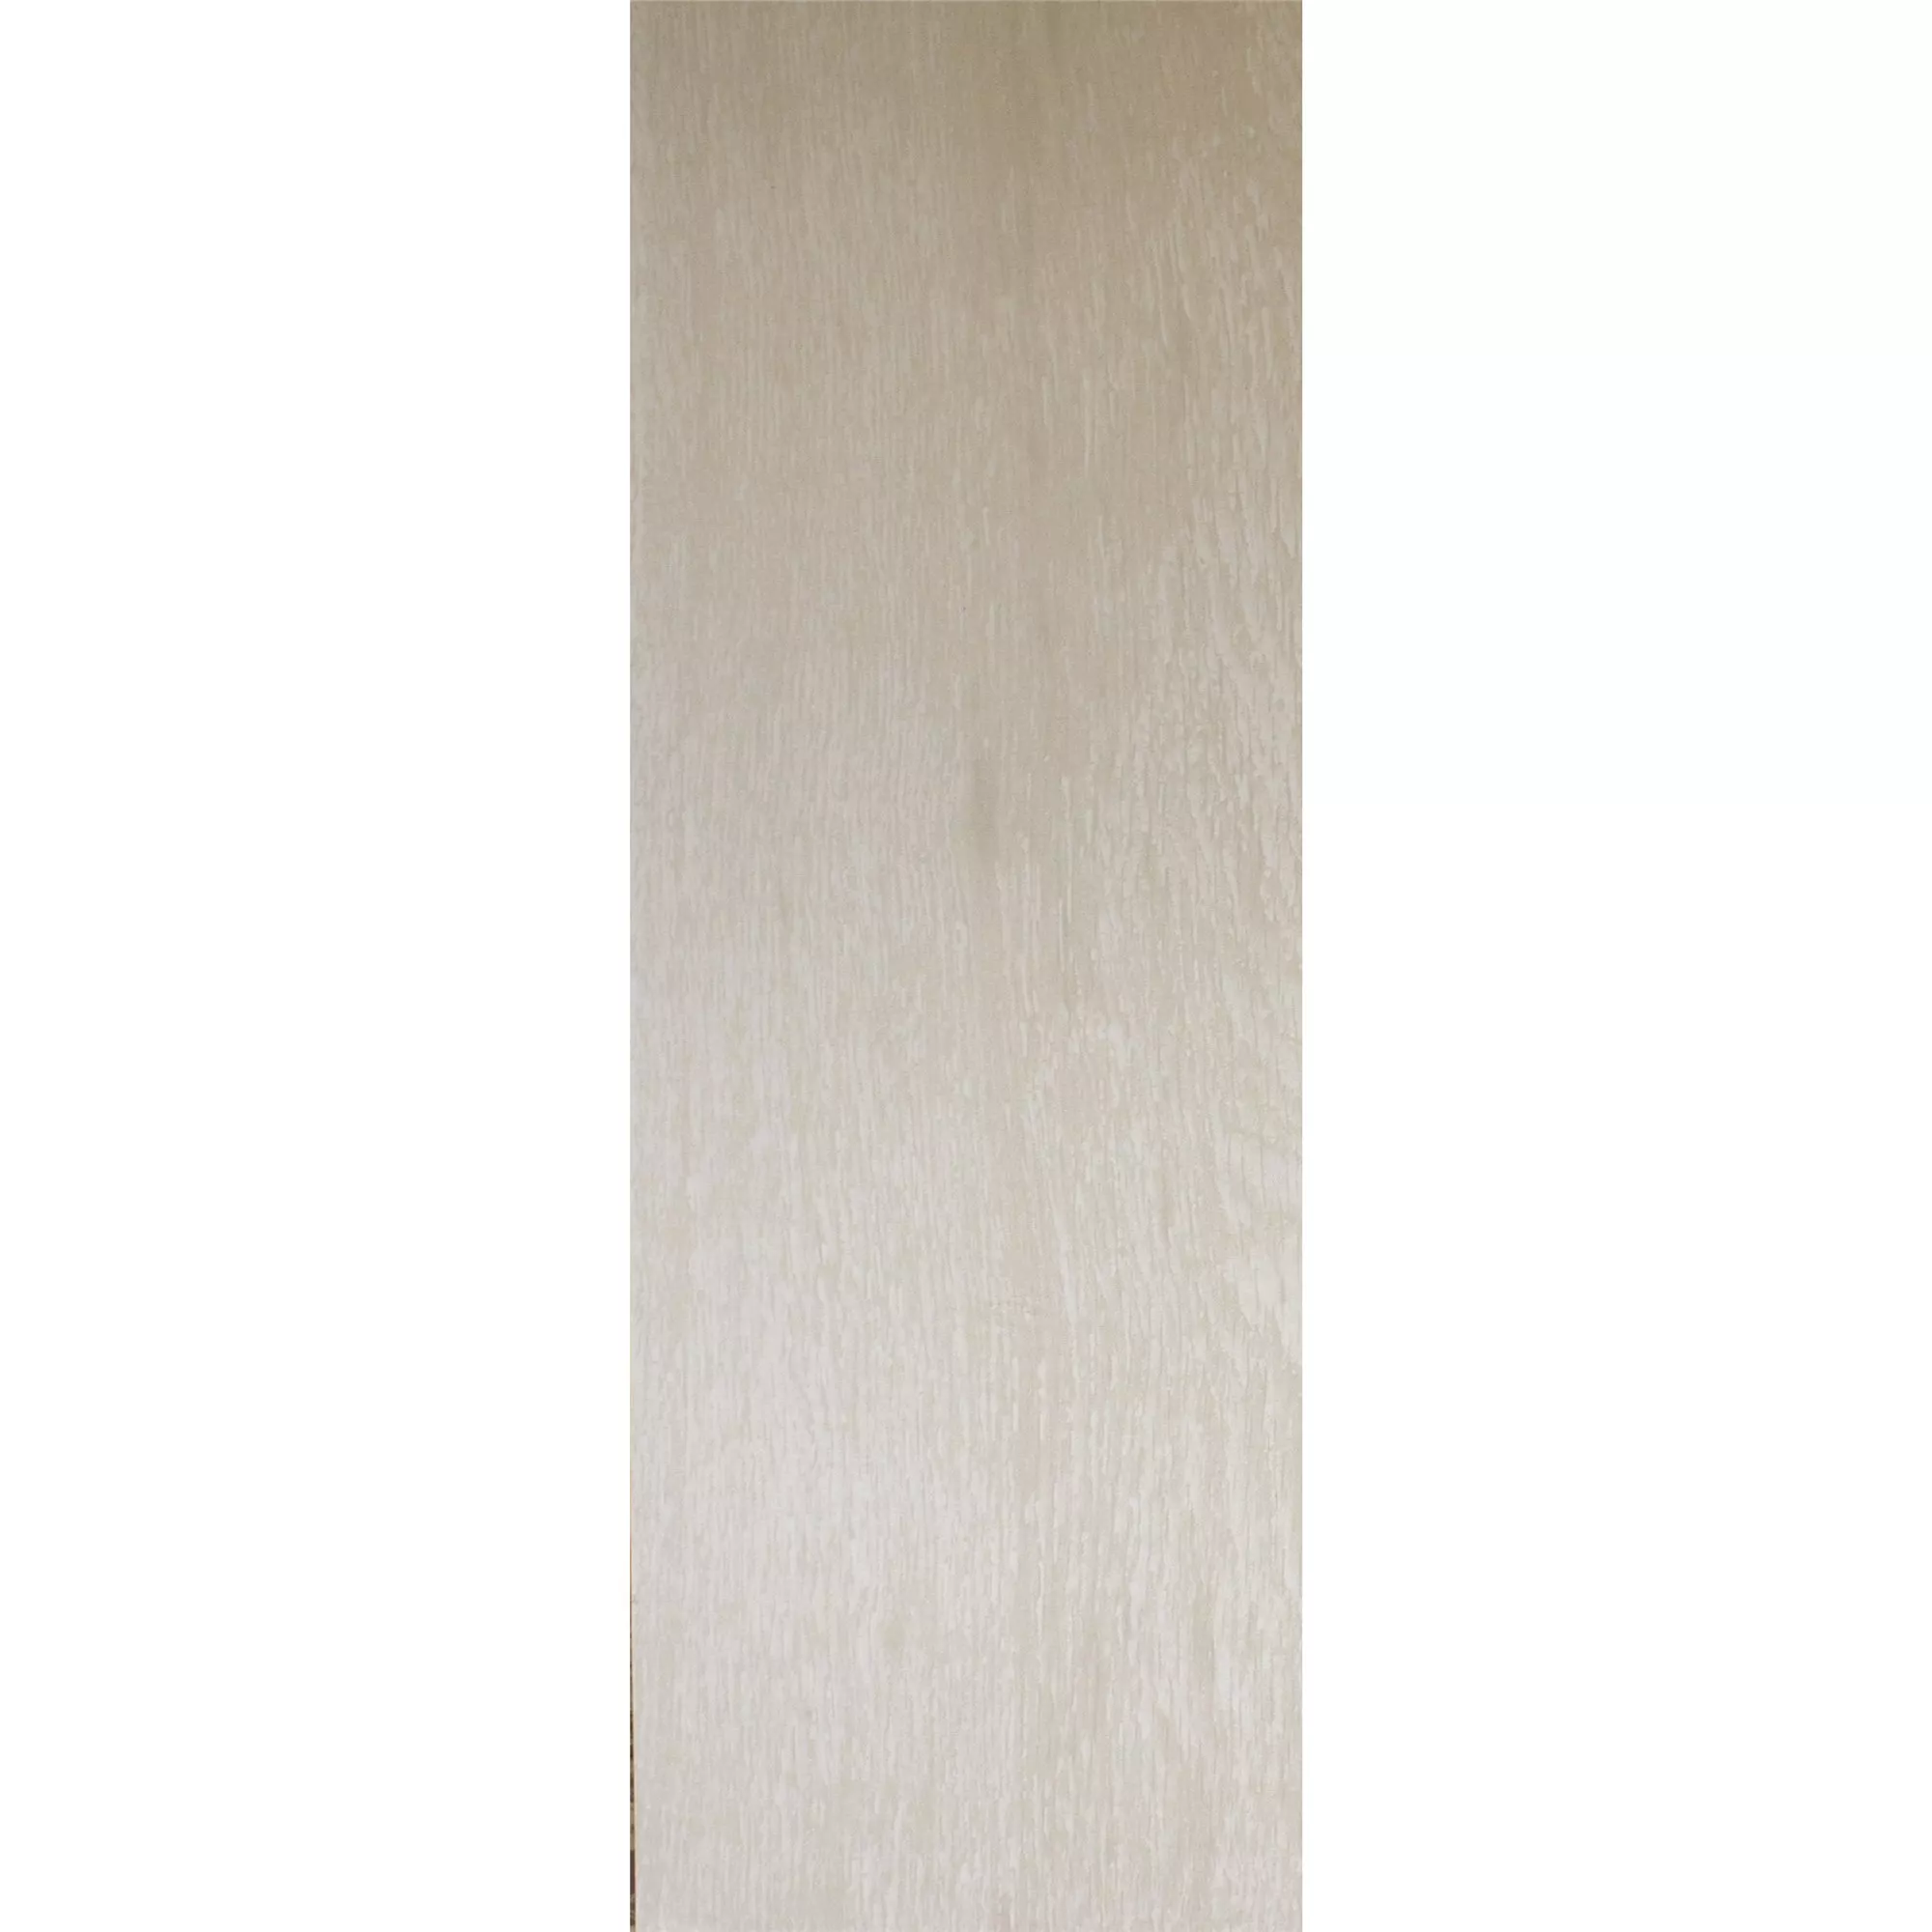 Płytki Podłogowe Herakles Wygląd Drewna White 20x120cm